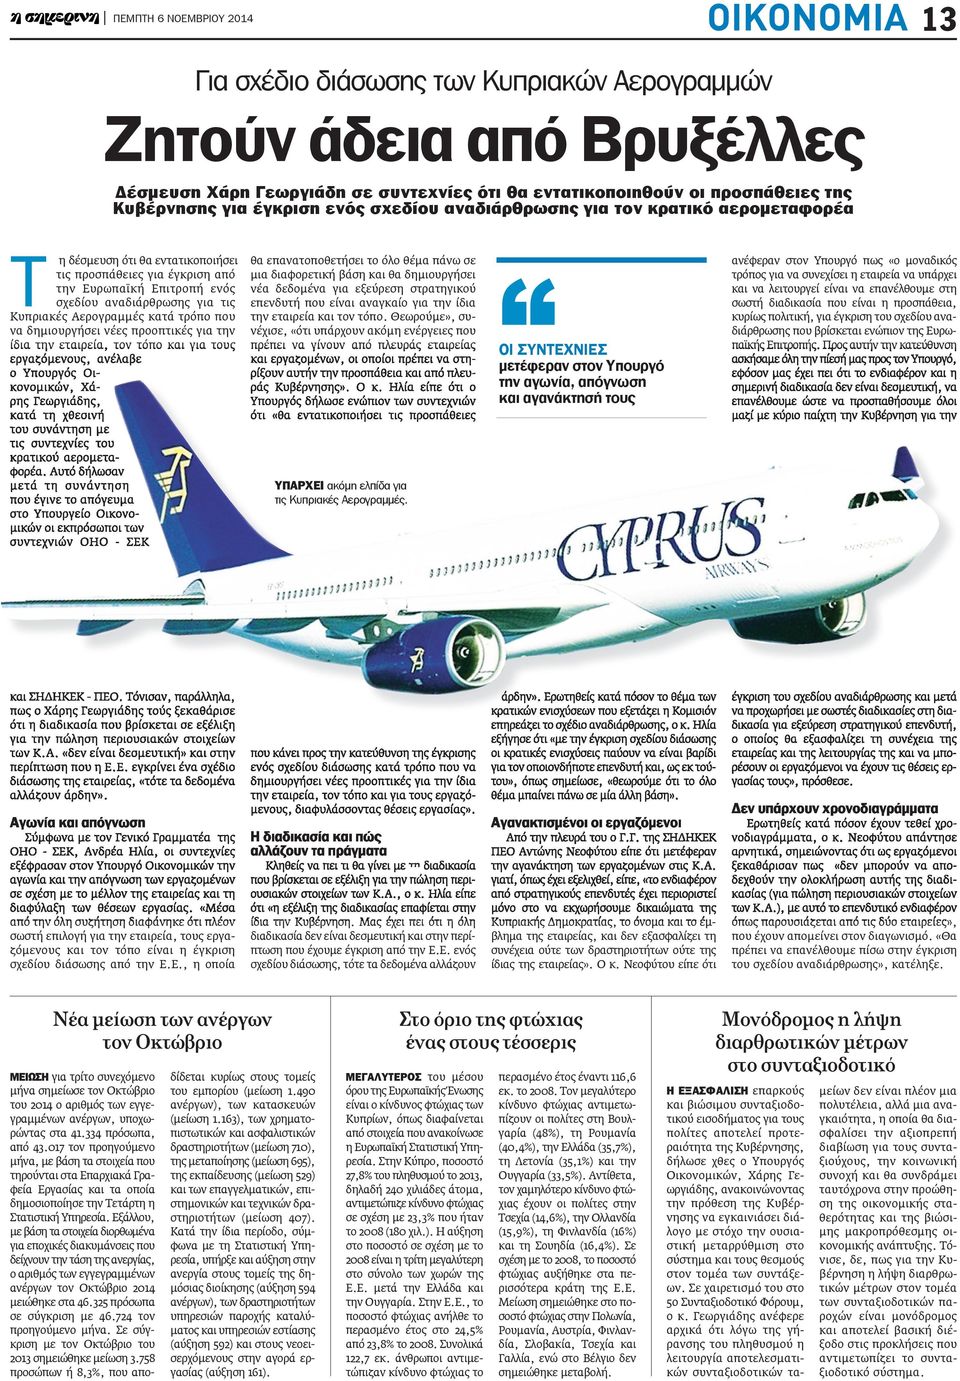 για τις Κυπριακές Αερογραμμές κατά τρόπο που να δημιουργήσει νέες προοπτικές για την ίδια την εταιρεία, τον τόπο και για τους εργαζόμενους, ανέλαβε ο Υπουργός Οικονομικών, Χάρης Γεωργιάδης, κατά τη